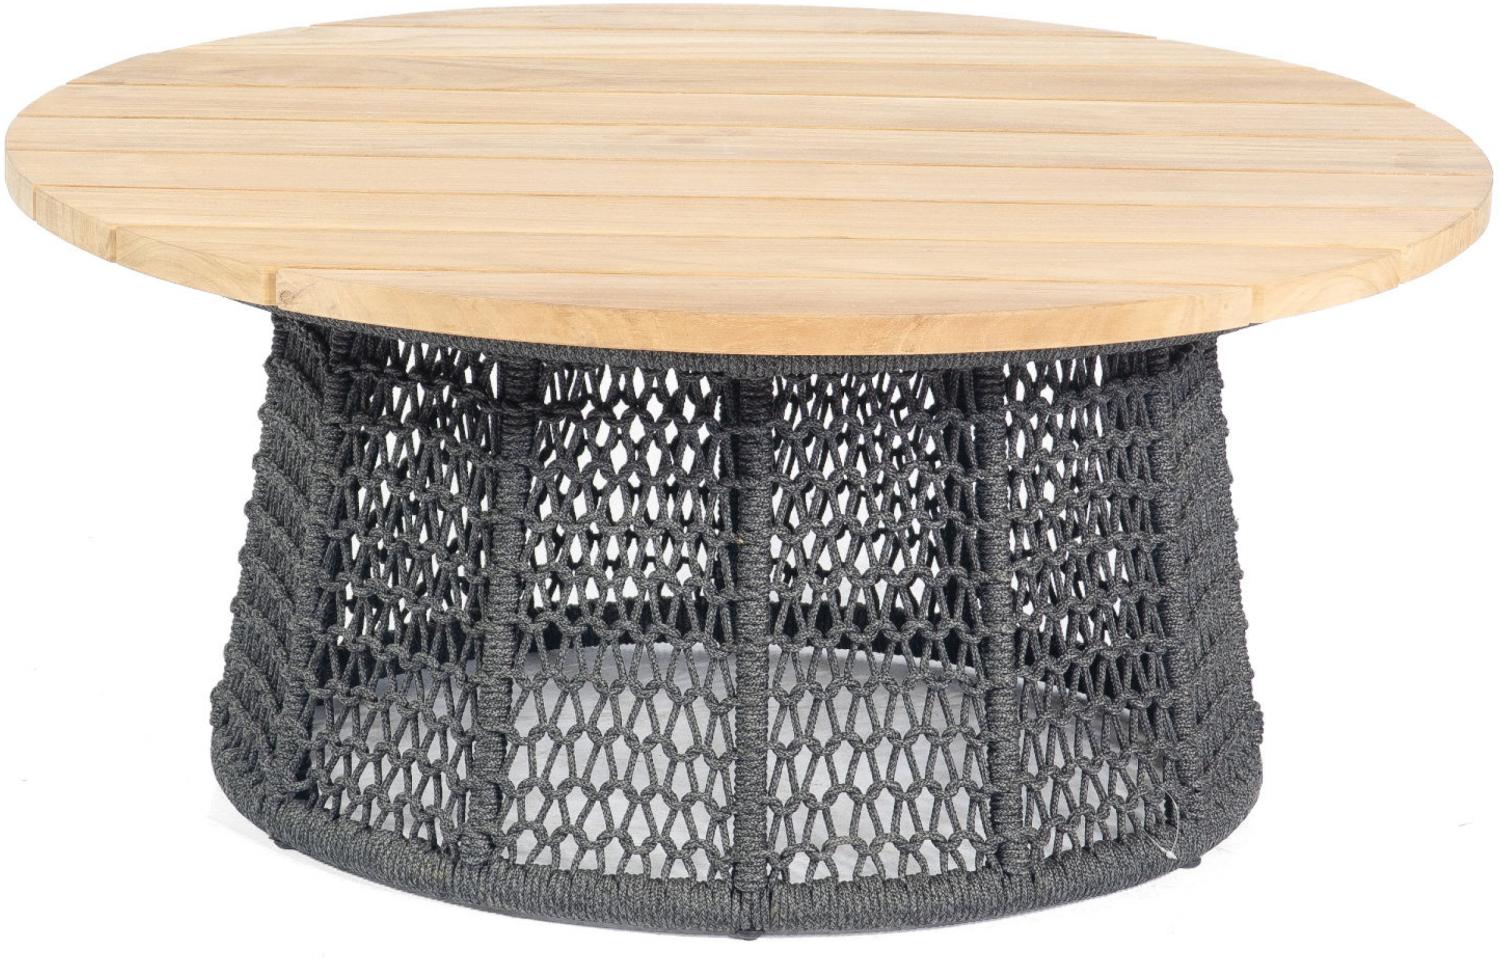 Sonnenpartner Lounge-Tisch Poison Ø 100 cm Teak/Alu/Polyrope grau Beistelltisch Bild 1